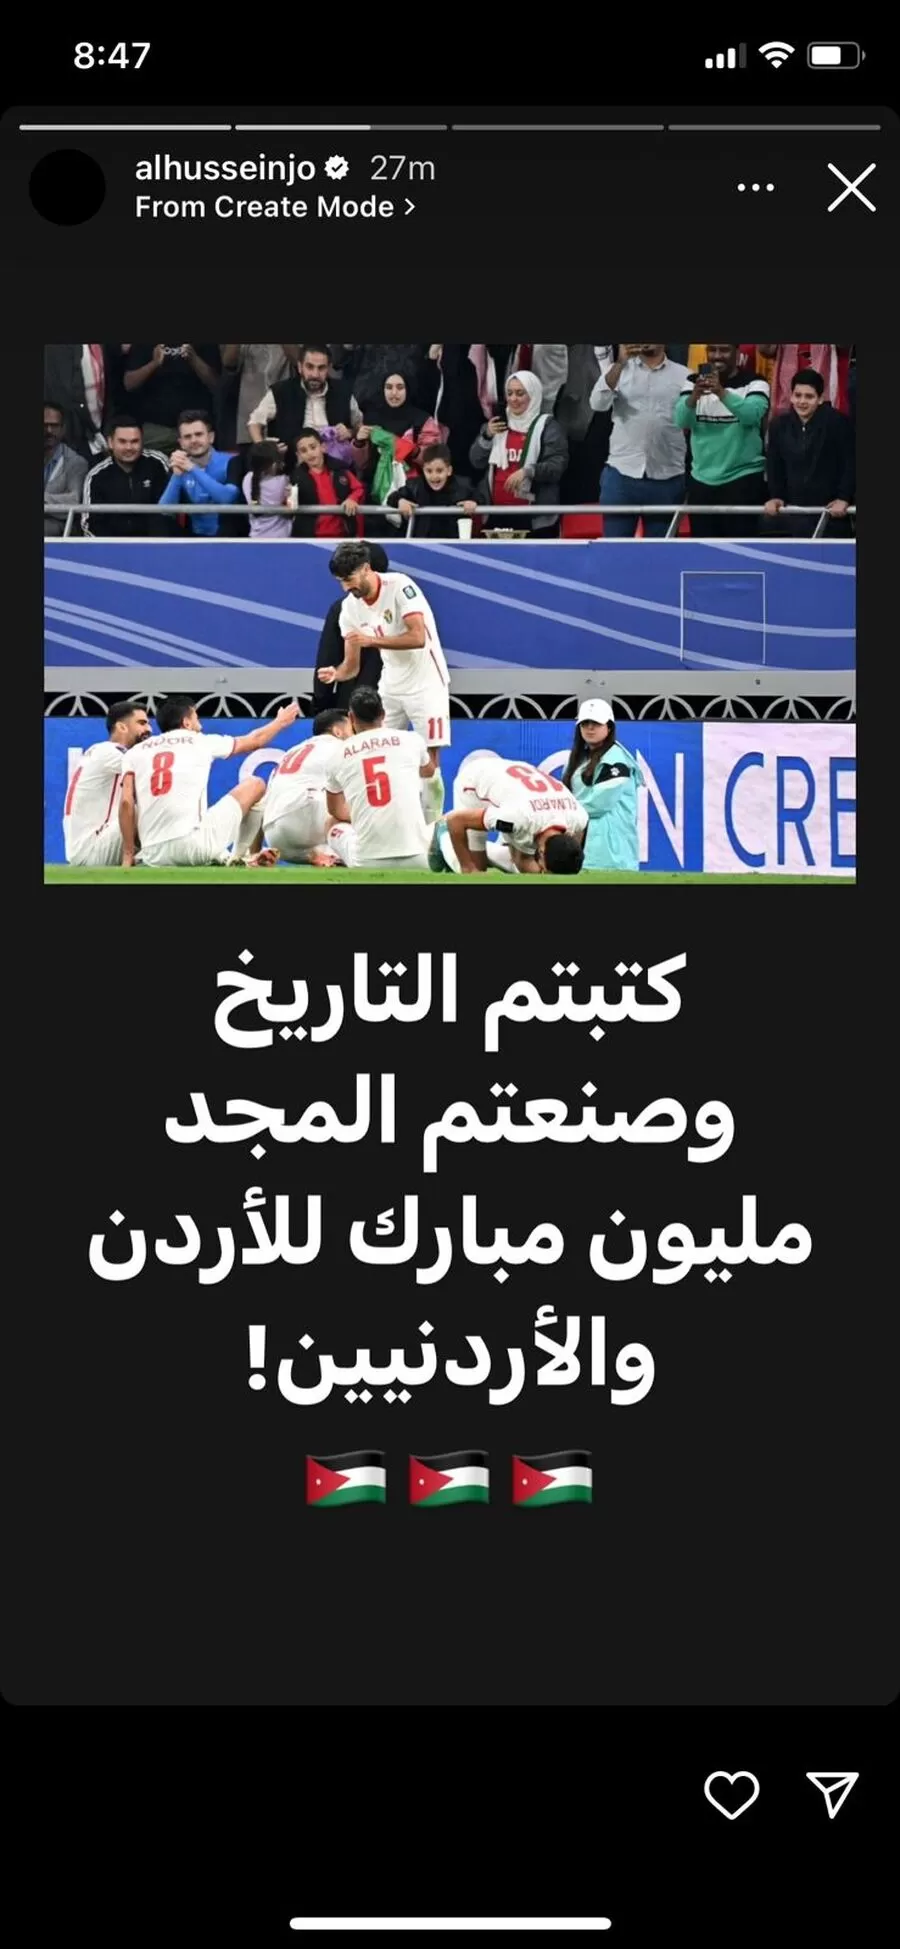 مدار الساعة,أخبار الأردن,اخبار الاردن,ولي العهد,الحسين بن عبدالله الثاني,المنتخب الوطني,كأس آسيا